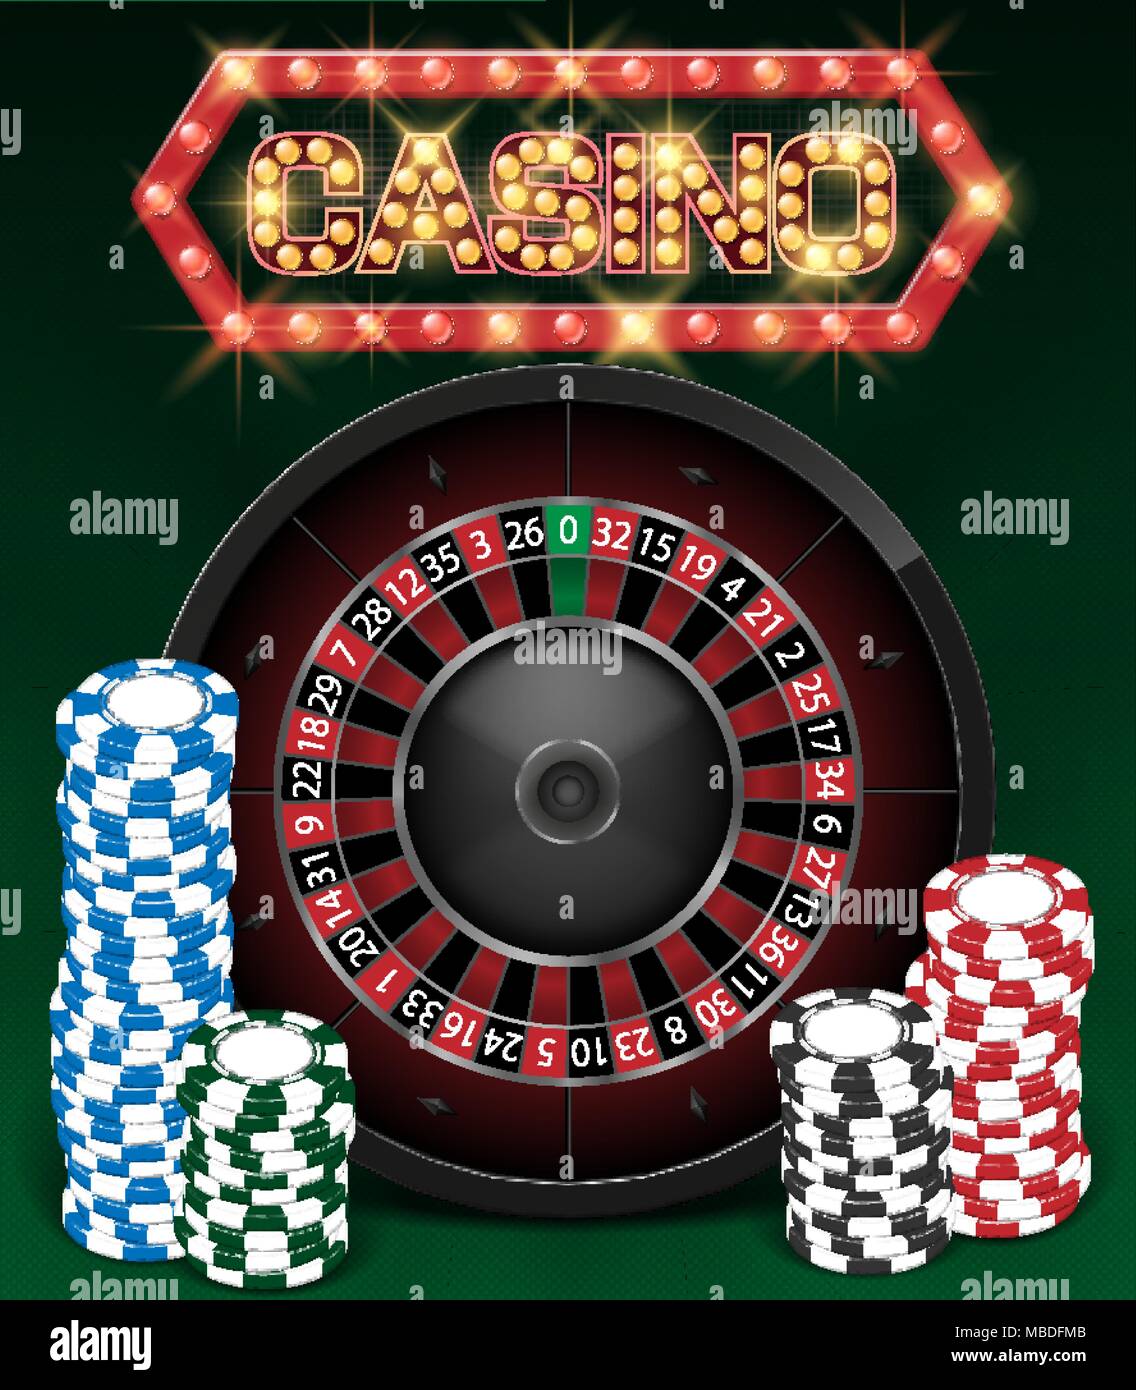 Casino Gambling Hintergrund Design mit realistischen Roulette und Casino Chips. Roulette Tisch auf grünem Hintergrund isoliert. Vector Illustration. Stock Vektor